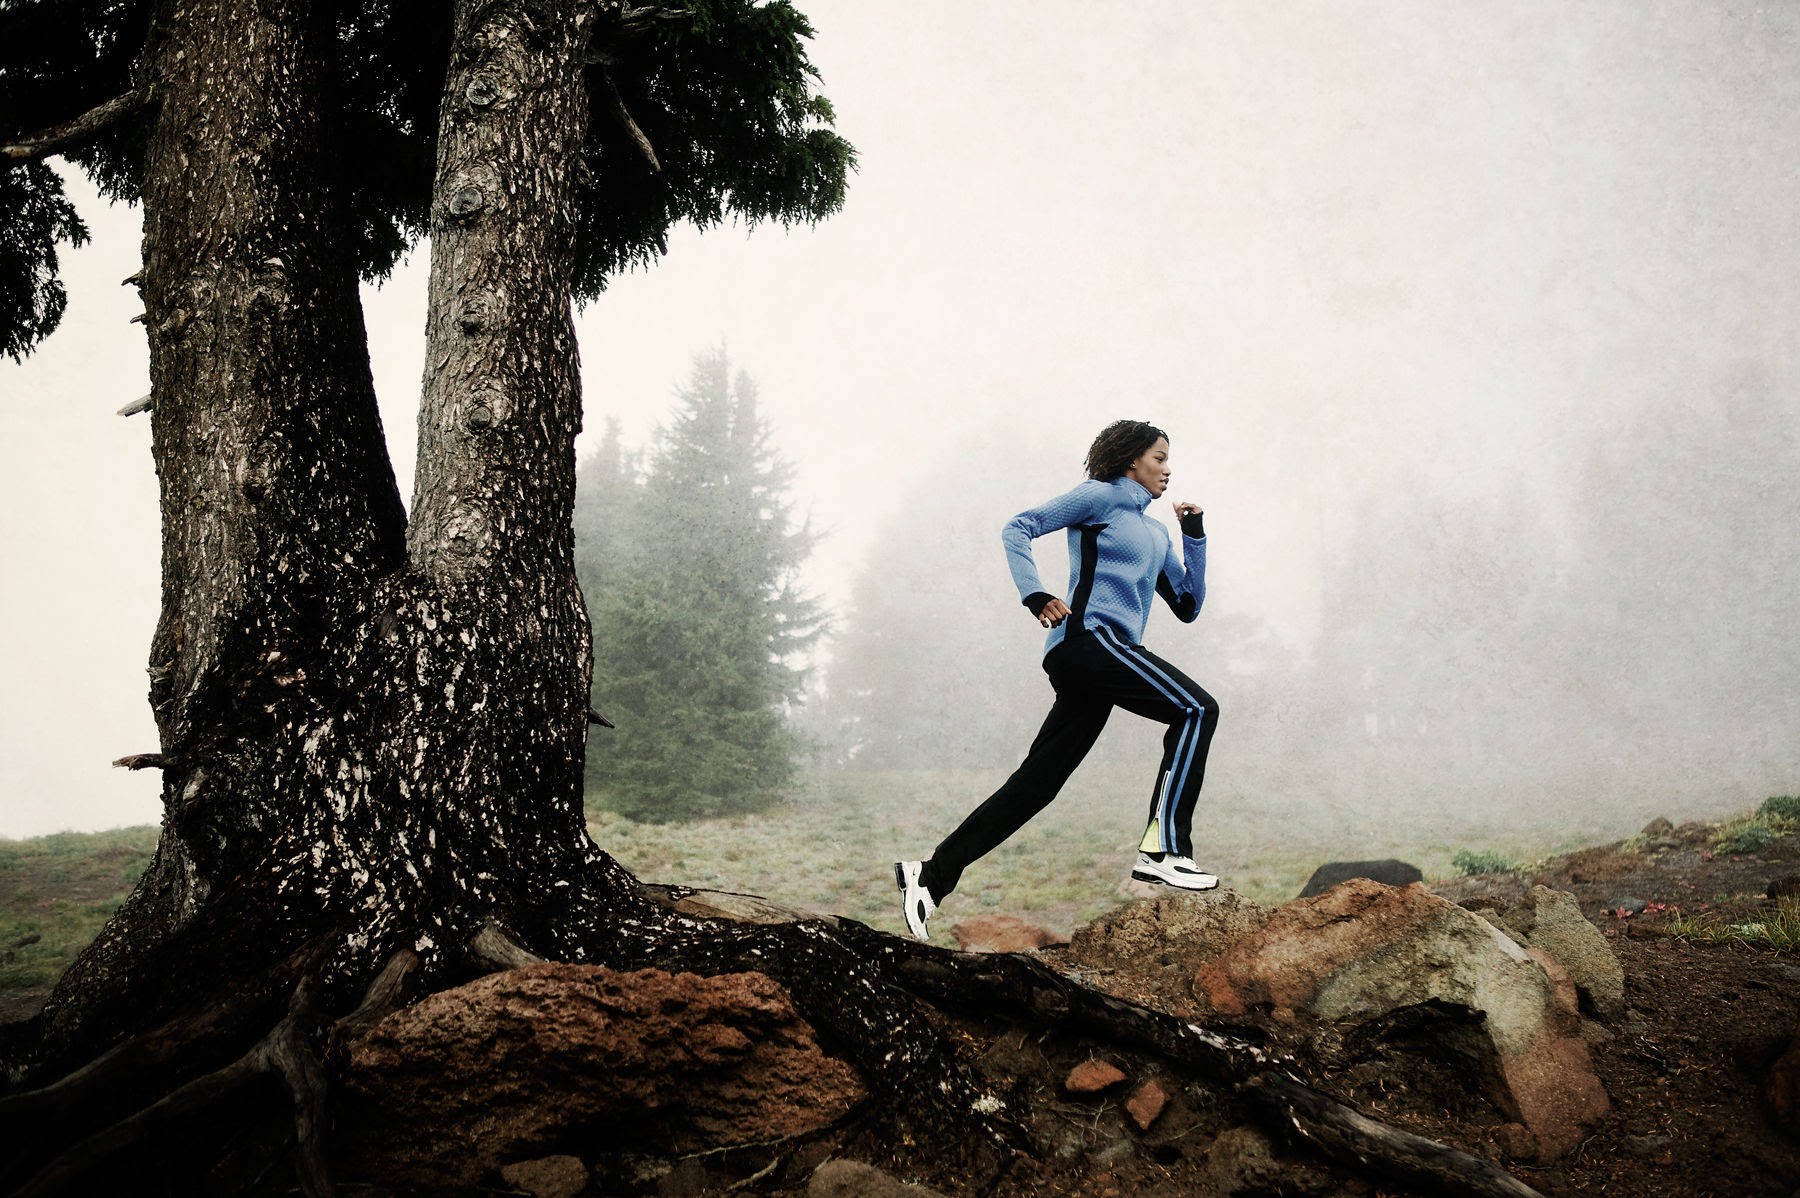  Los beneficios del ejercicio: correr